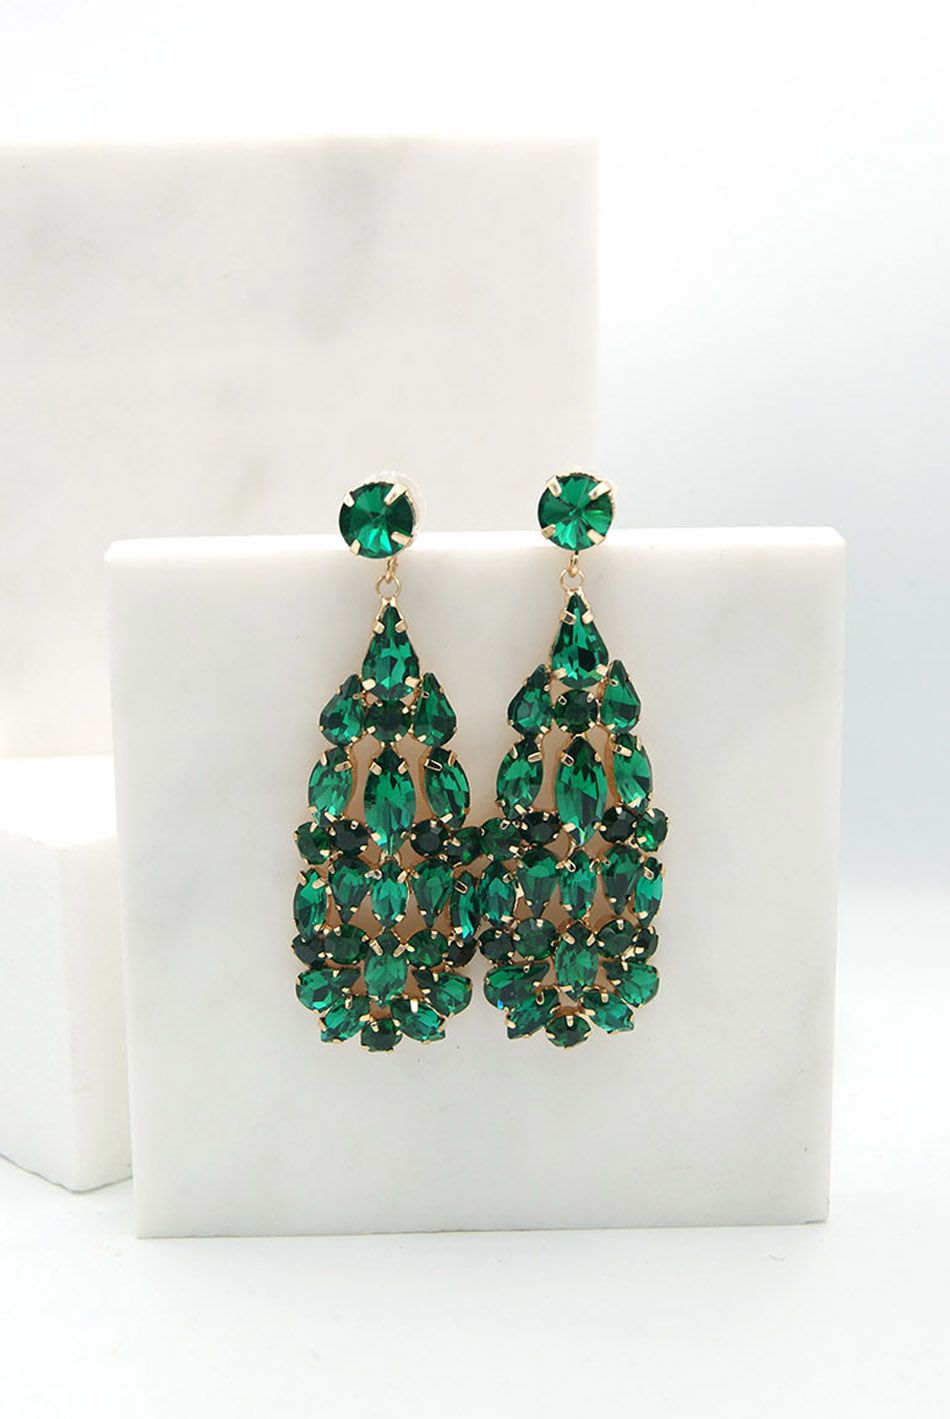 Κρεμαστά σκουλαρίκια σε χρυσή βάση με στρας και κρυστάλλους Πράσινο / 126023-green ΑΞΕΣΟΥΑΡ joya.gr